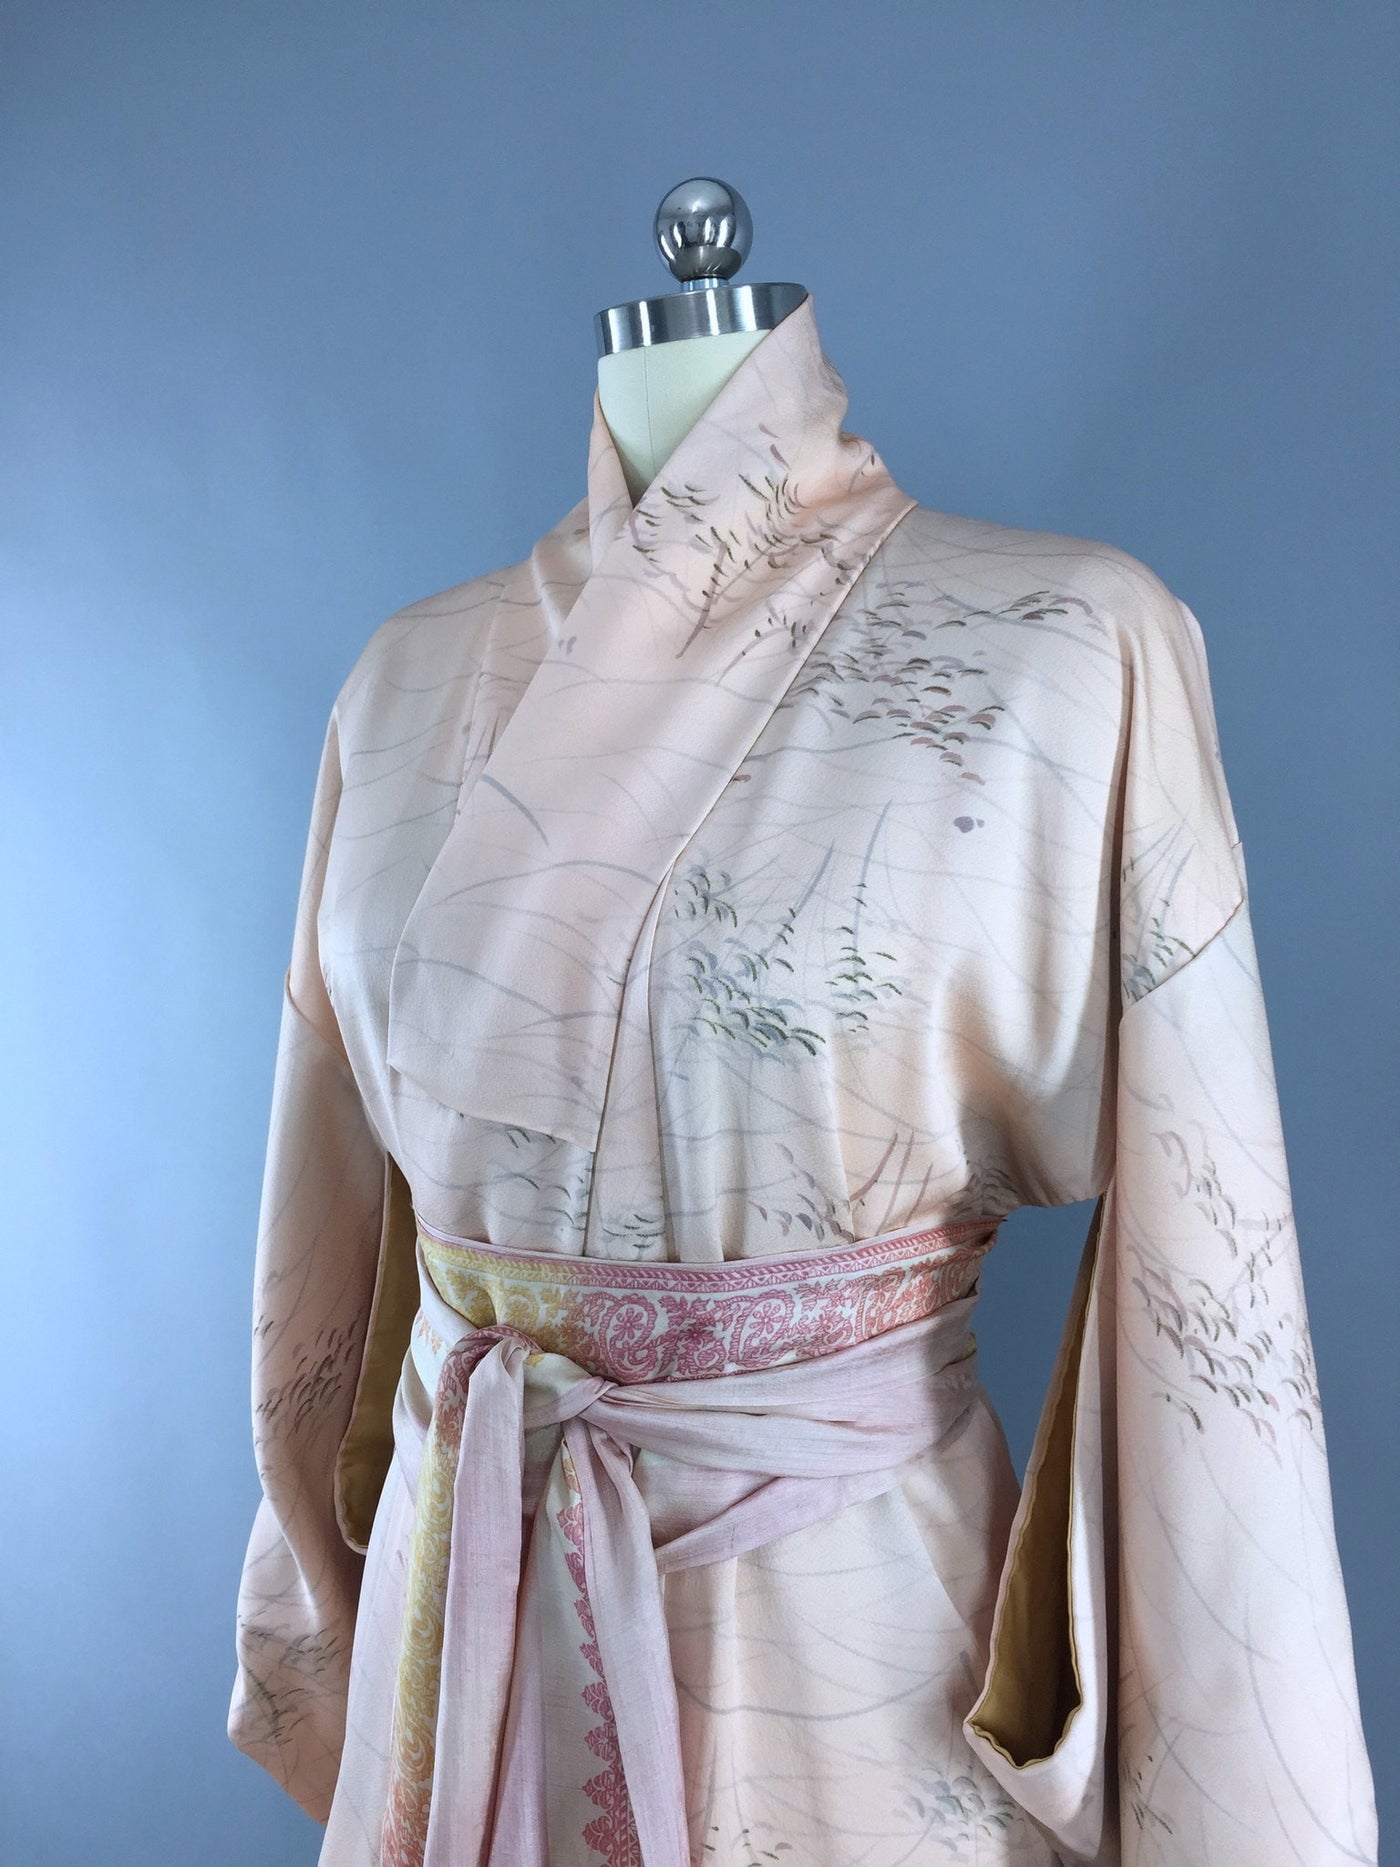 Vintage 1970s Vintage Kimono Robe / Peach & Grey Abstract Print - ThisBlueBird